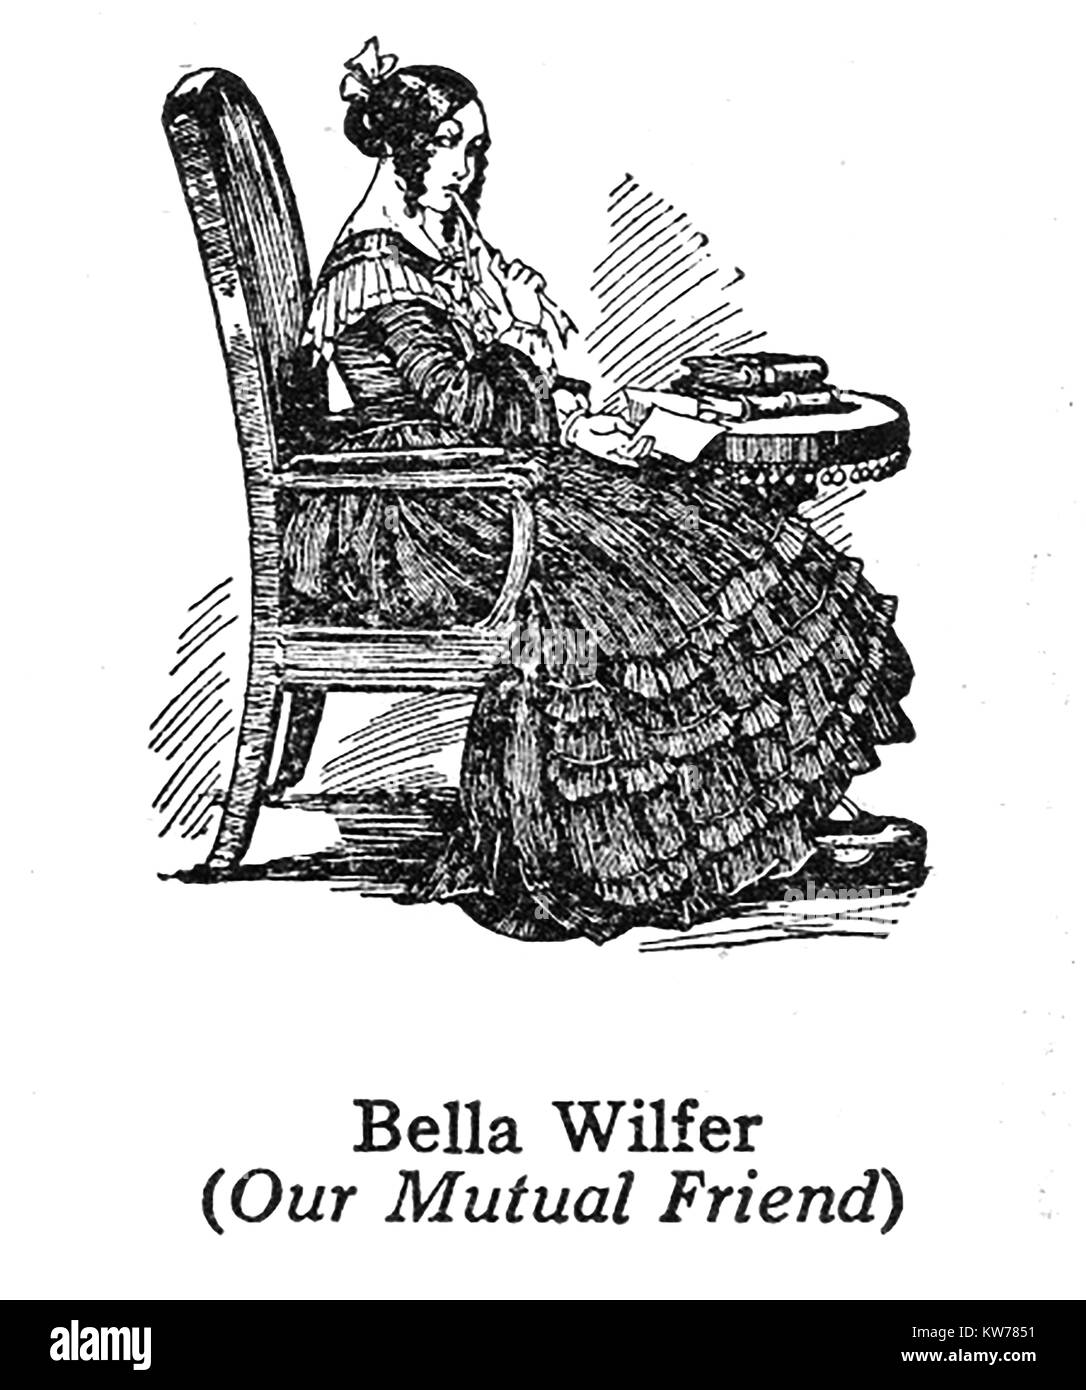 Charles Dickens 1812 bis 1870 - Dickens Charaktere-1930 Illustration - Bella Wilfer von "Unser gemeinsamer Freund" Stockfoto